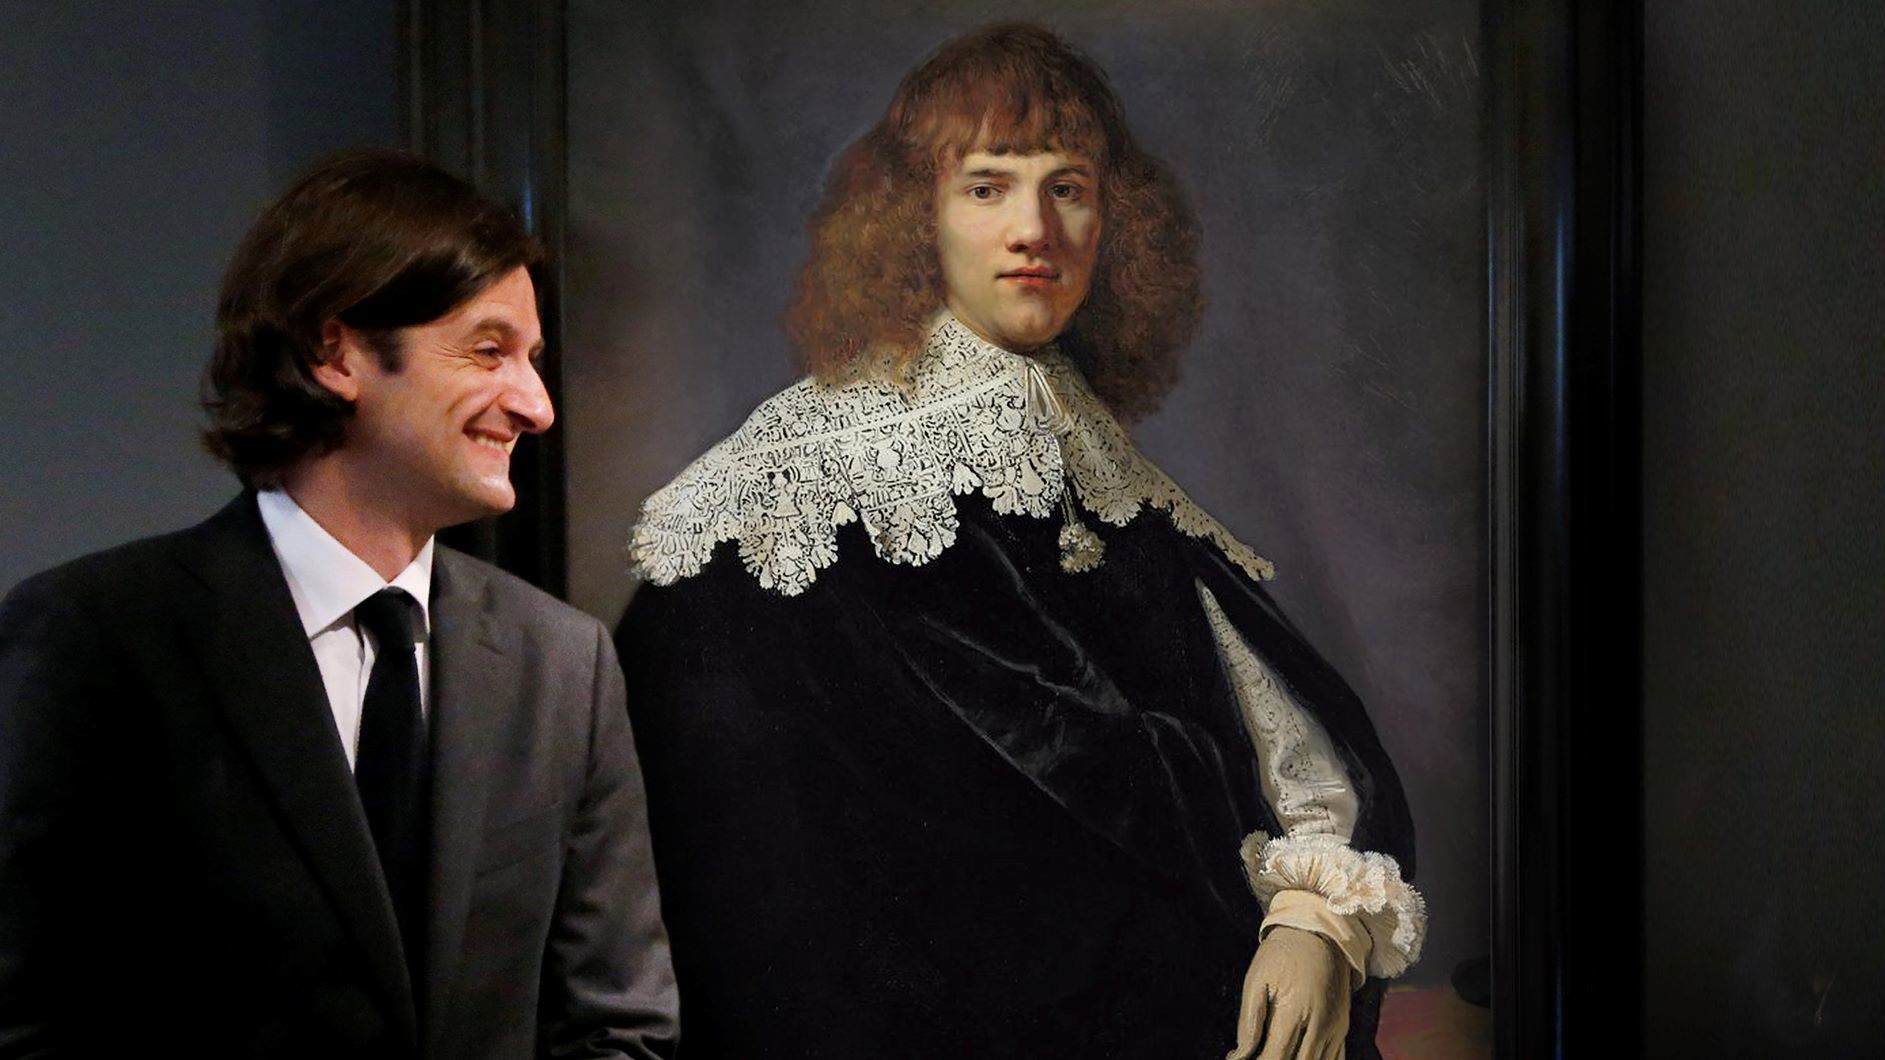 VERKLEIND Kunsthandelaar Jan Six XI junior bij Portret van een jonge man dat volgens hem van Rembrandt is